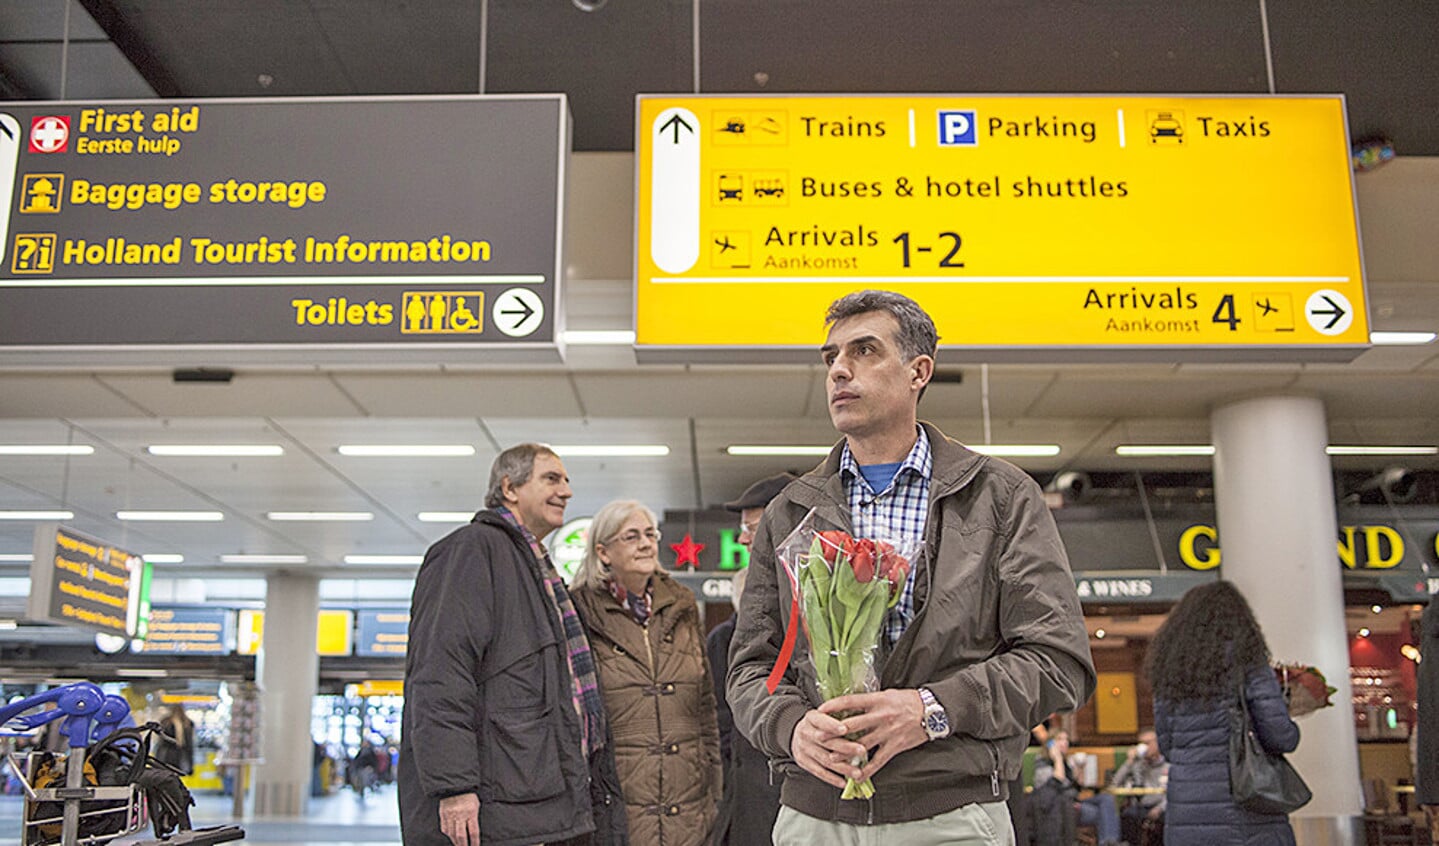 Stijf van de zenuwen wacht Syros in de aankomsthal op Schiphol op zijn gezin. Hij heeft hen bijna vijf jaar niet gezien.